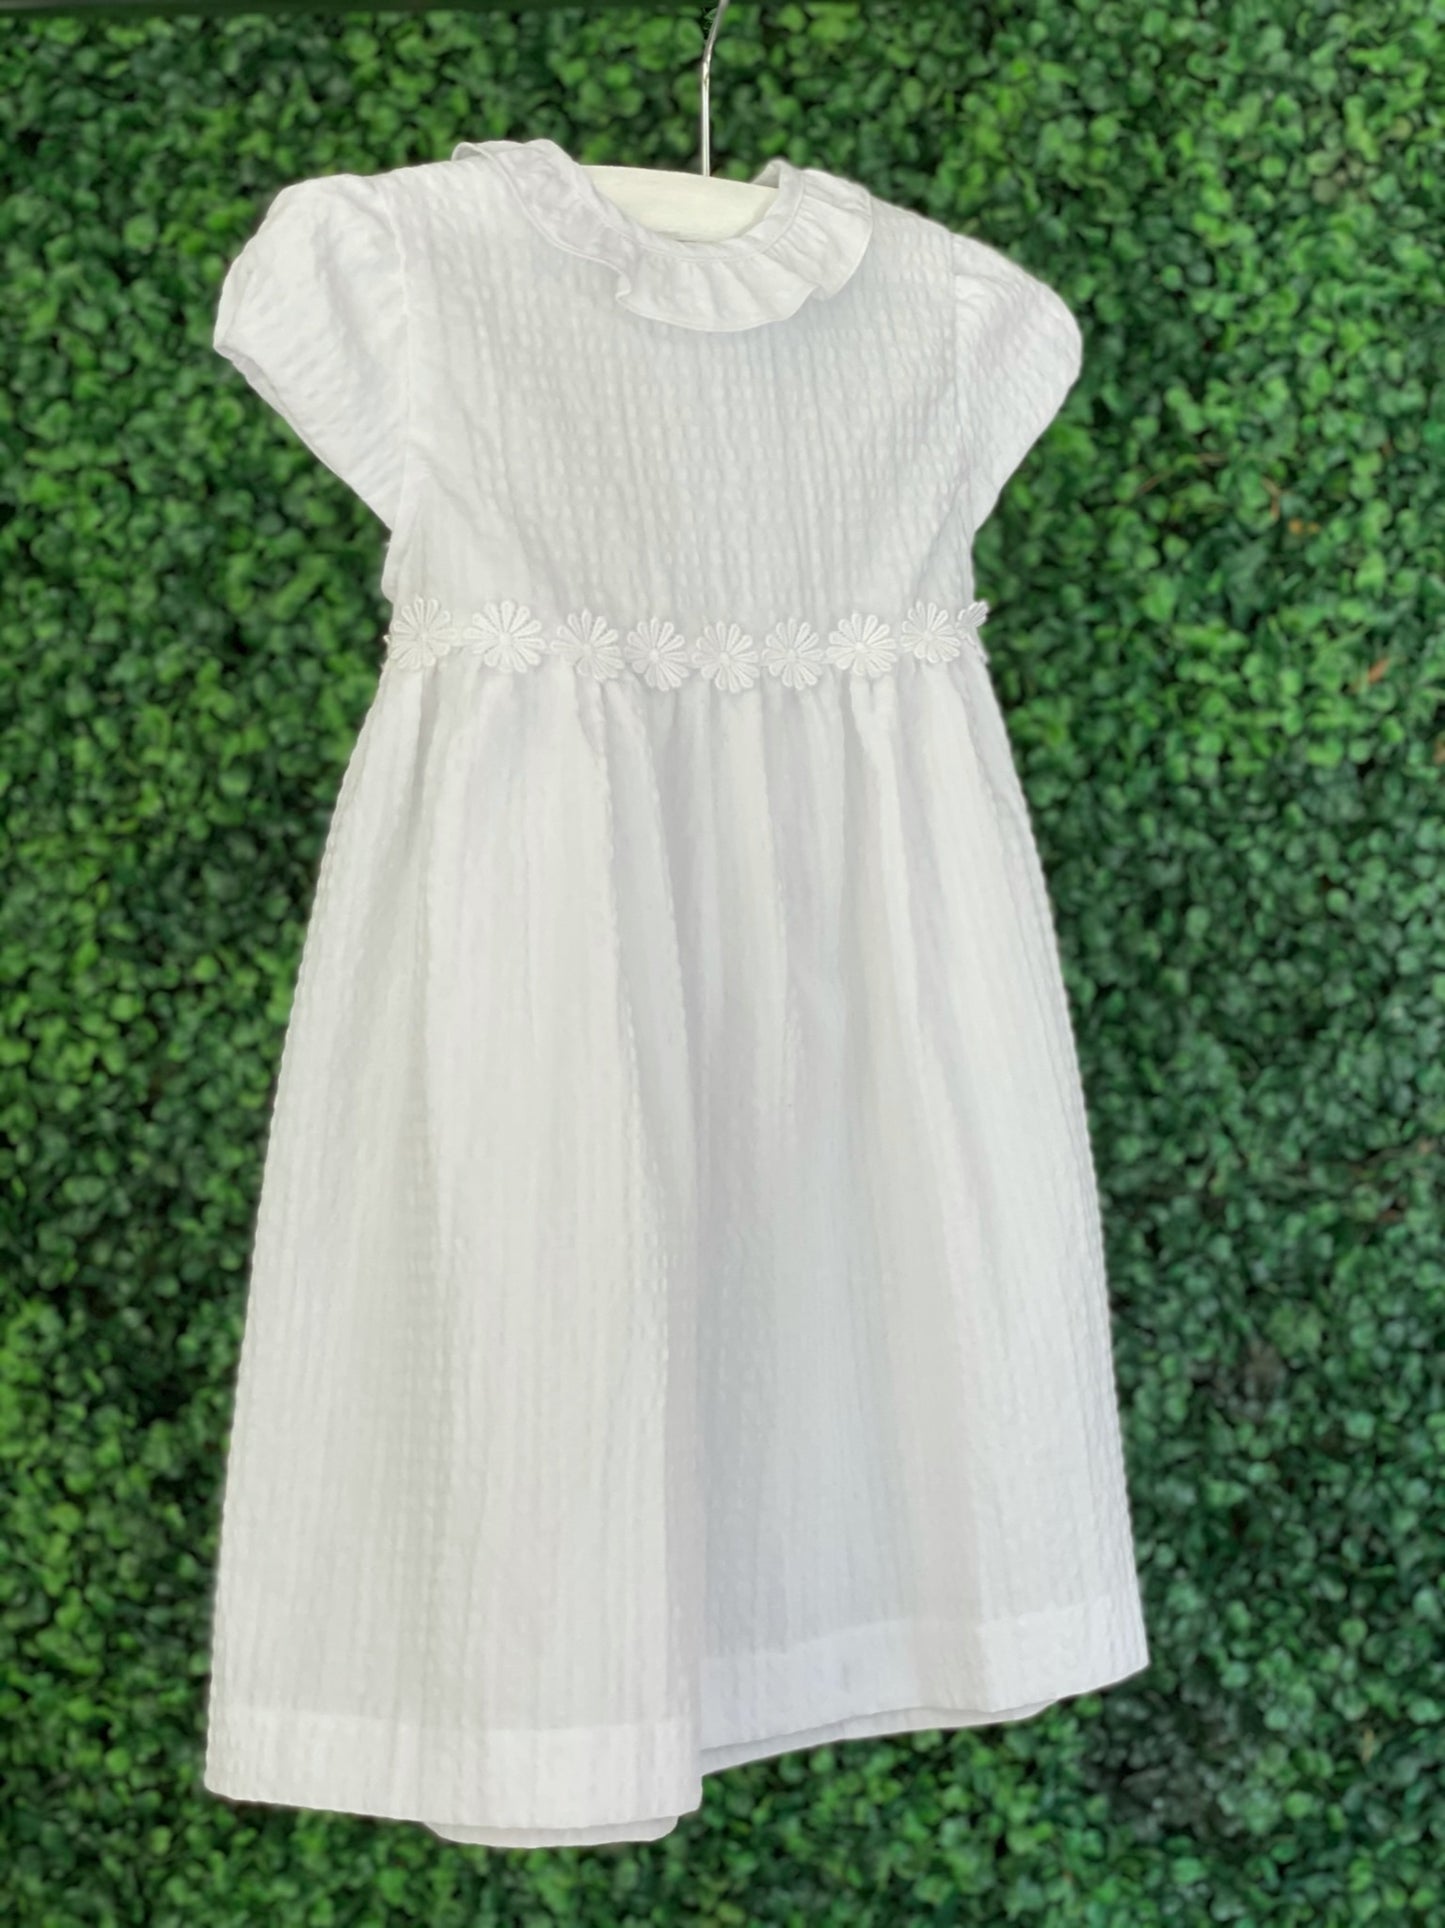 Bambola Dress - White Seersucker